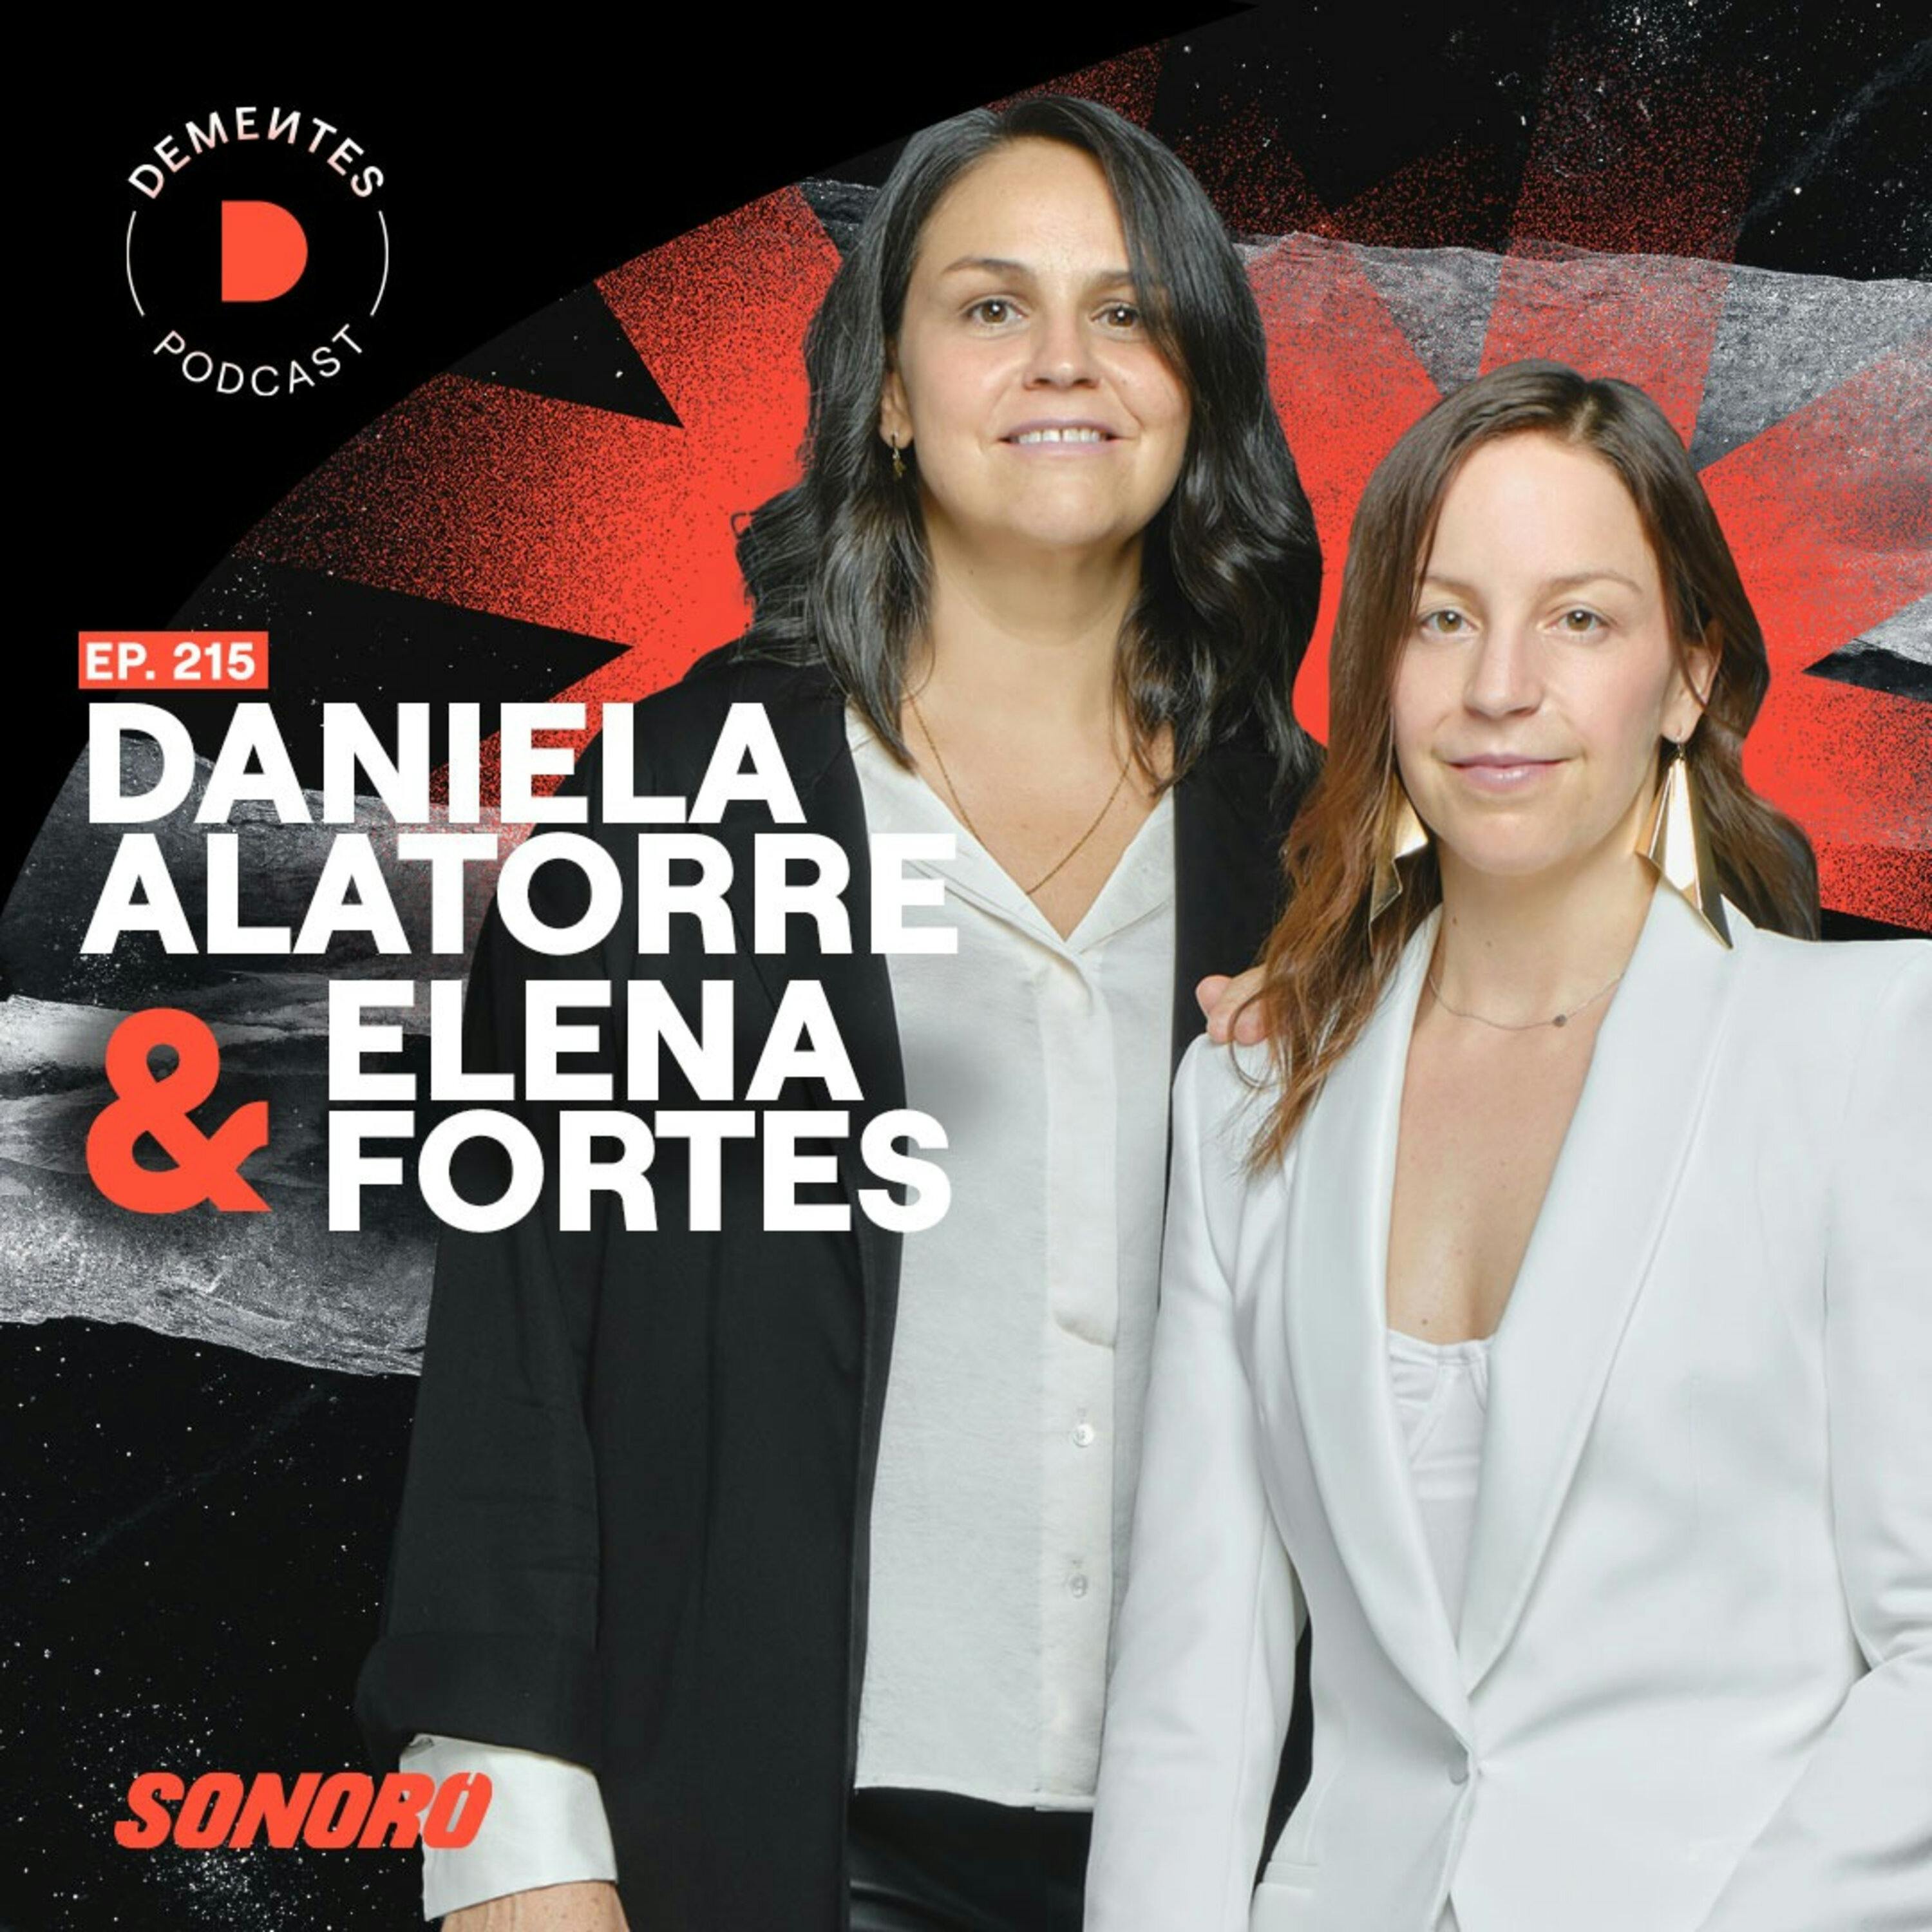 Sobre romper esquemas y contar historias relevantes | Daniela Alatorre y Elena Fortes | 215